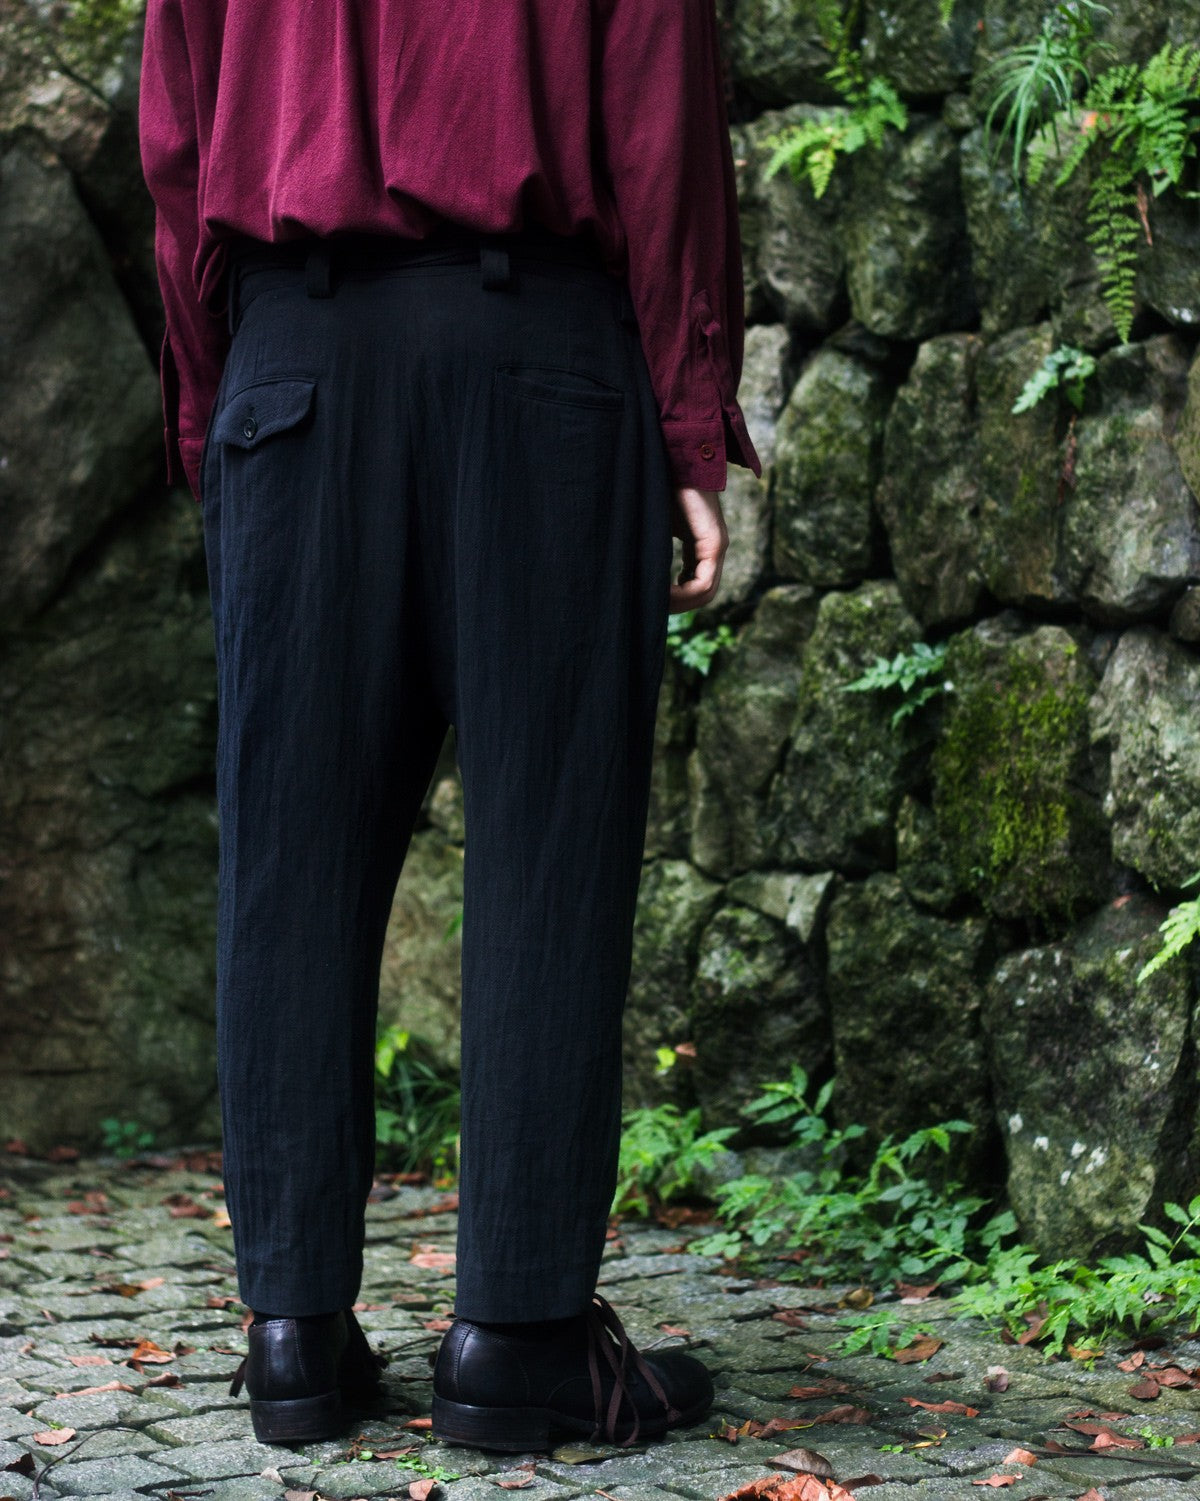 ROSEN Yeats Trousers in Crosshatched Linen Sz 1